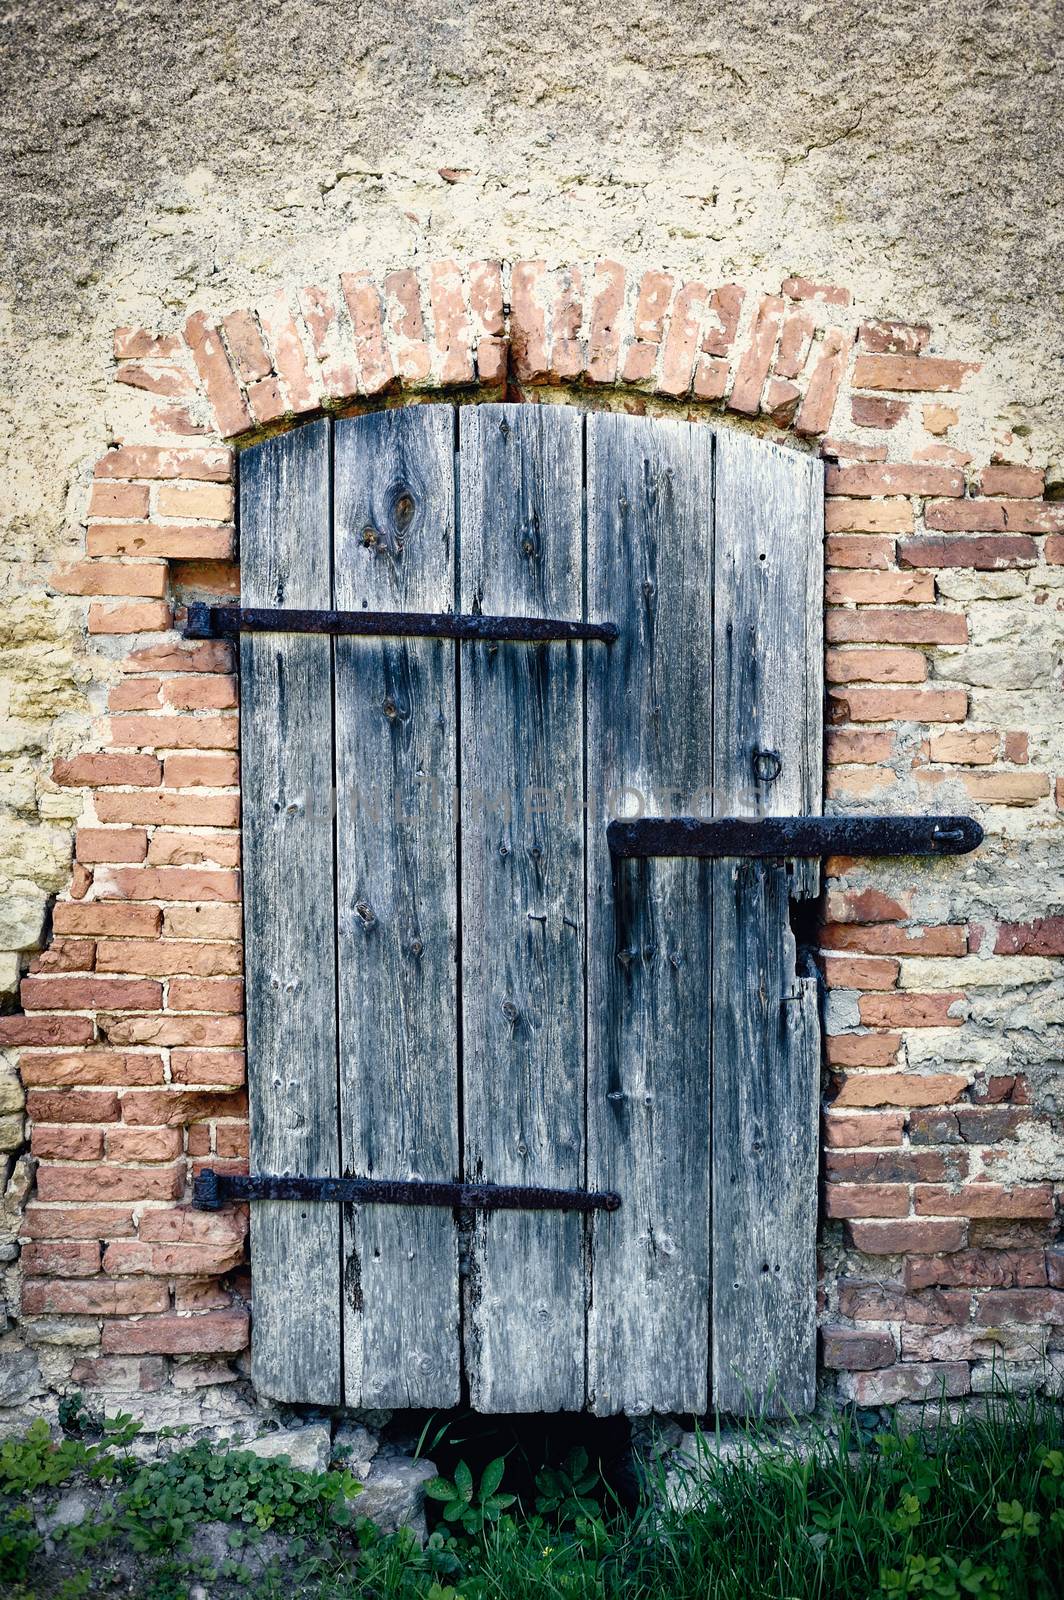 Wooden door of an old abandoned brick building